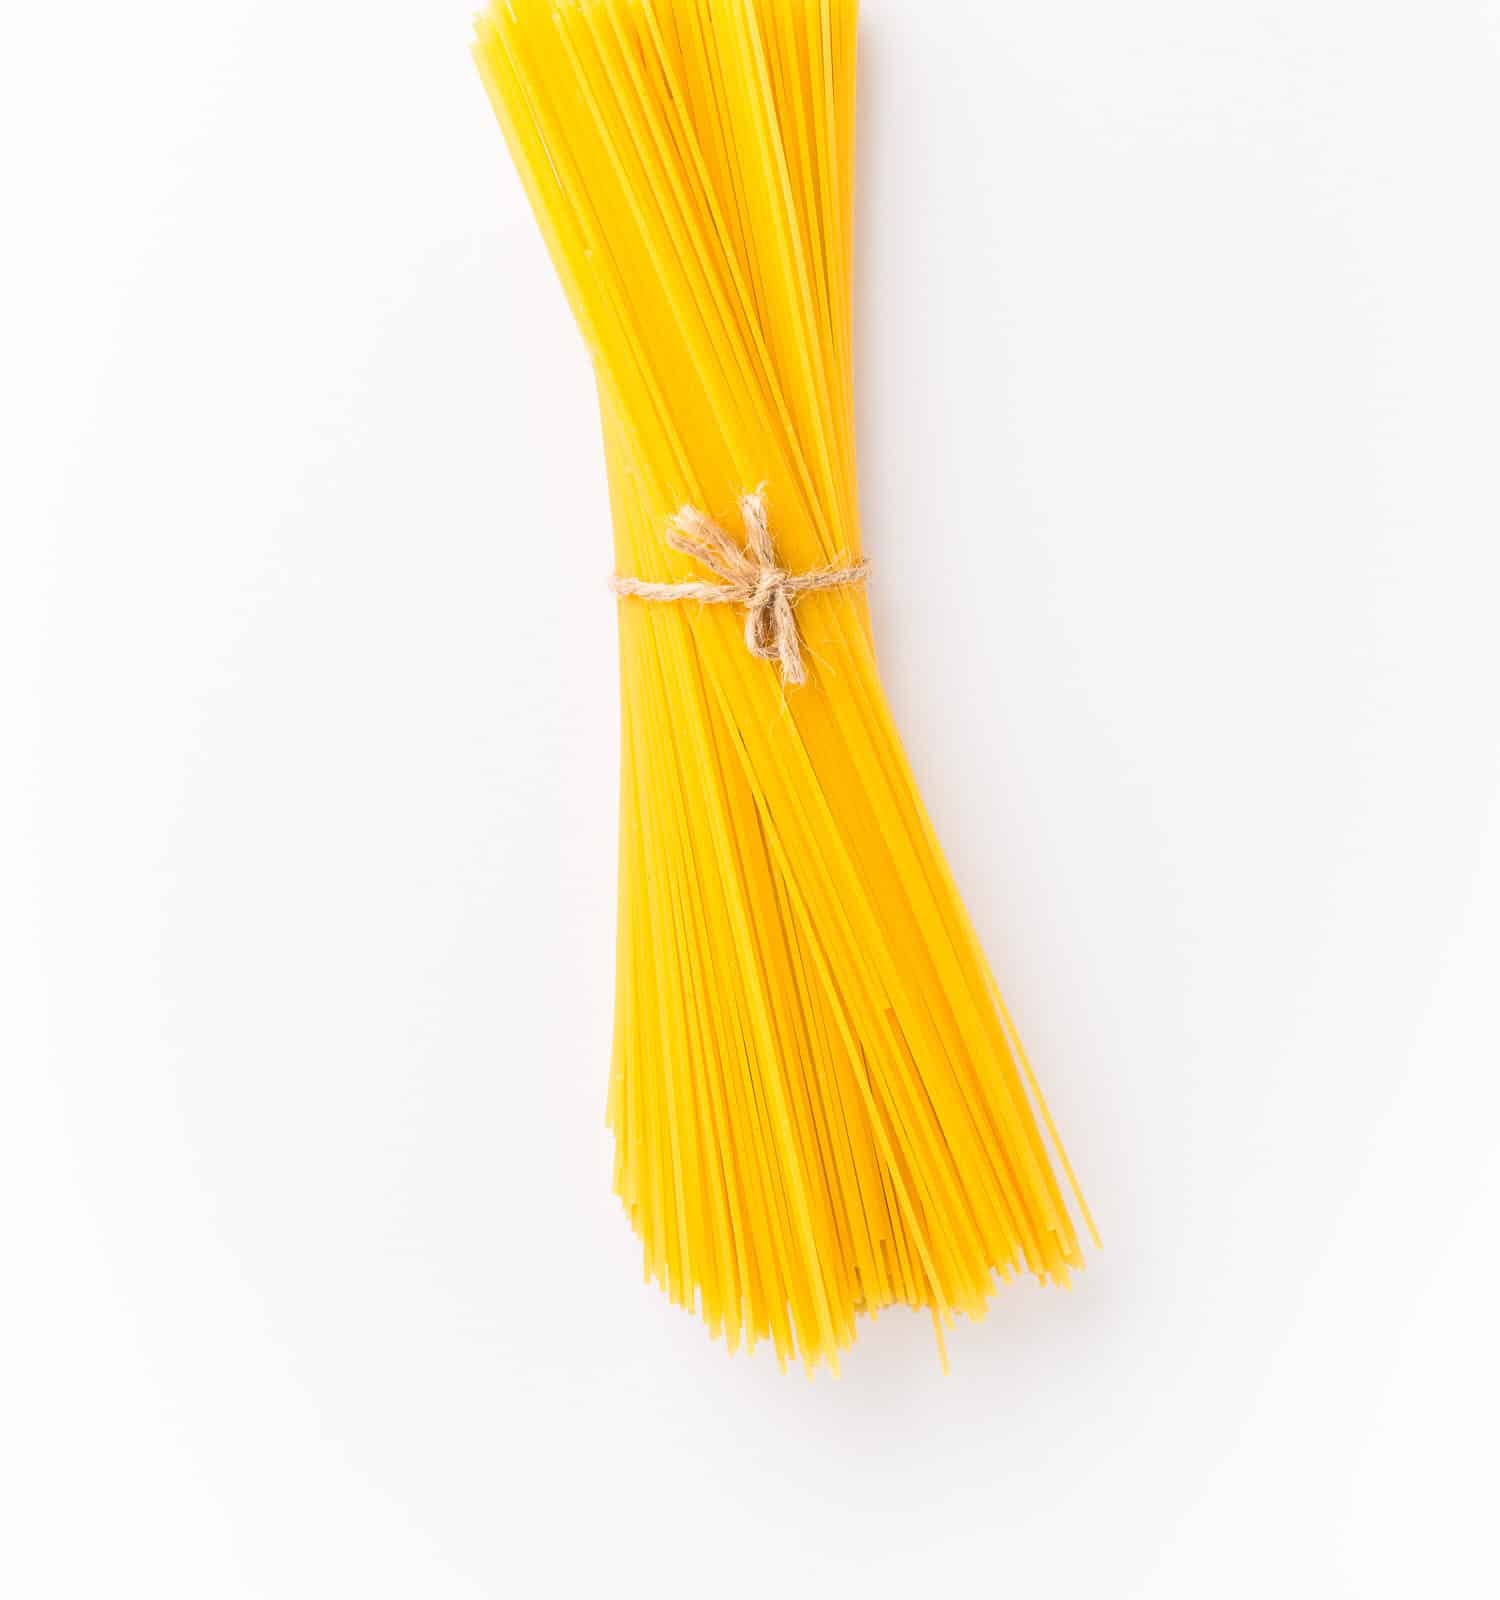 Spaghettini - thinner Spaghetti. Raw Spaghetti on white background. 